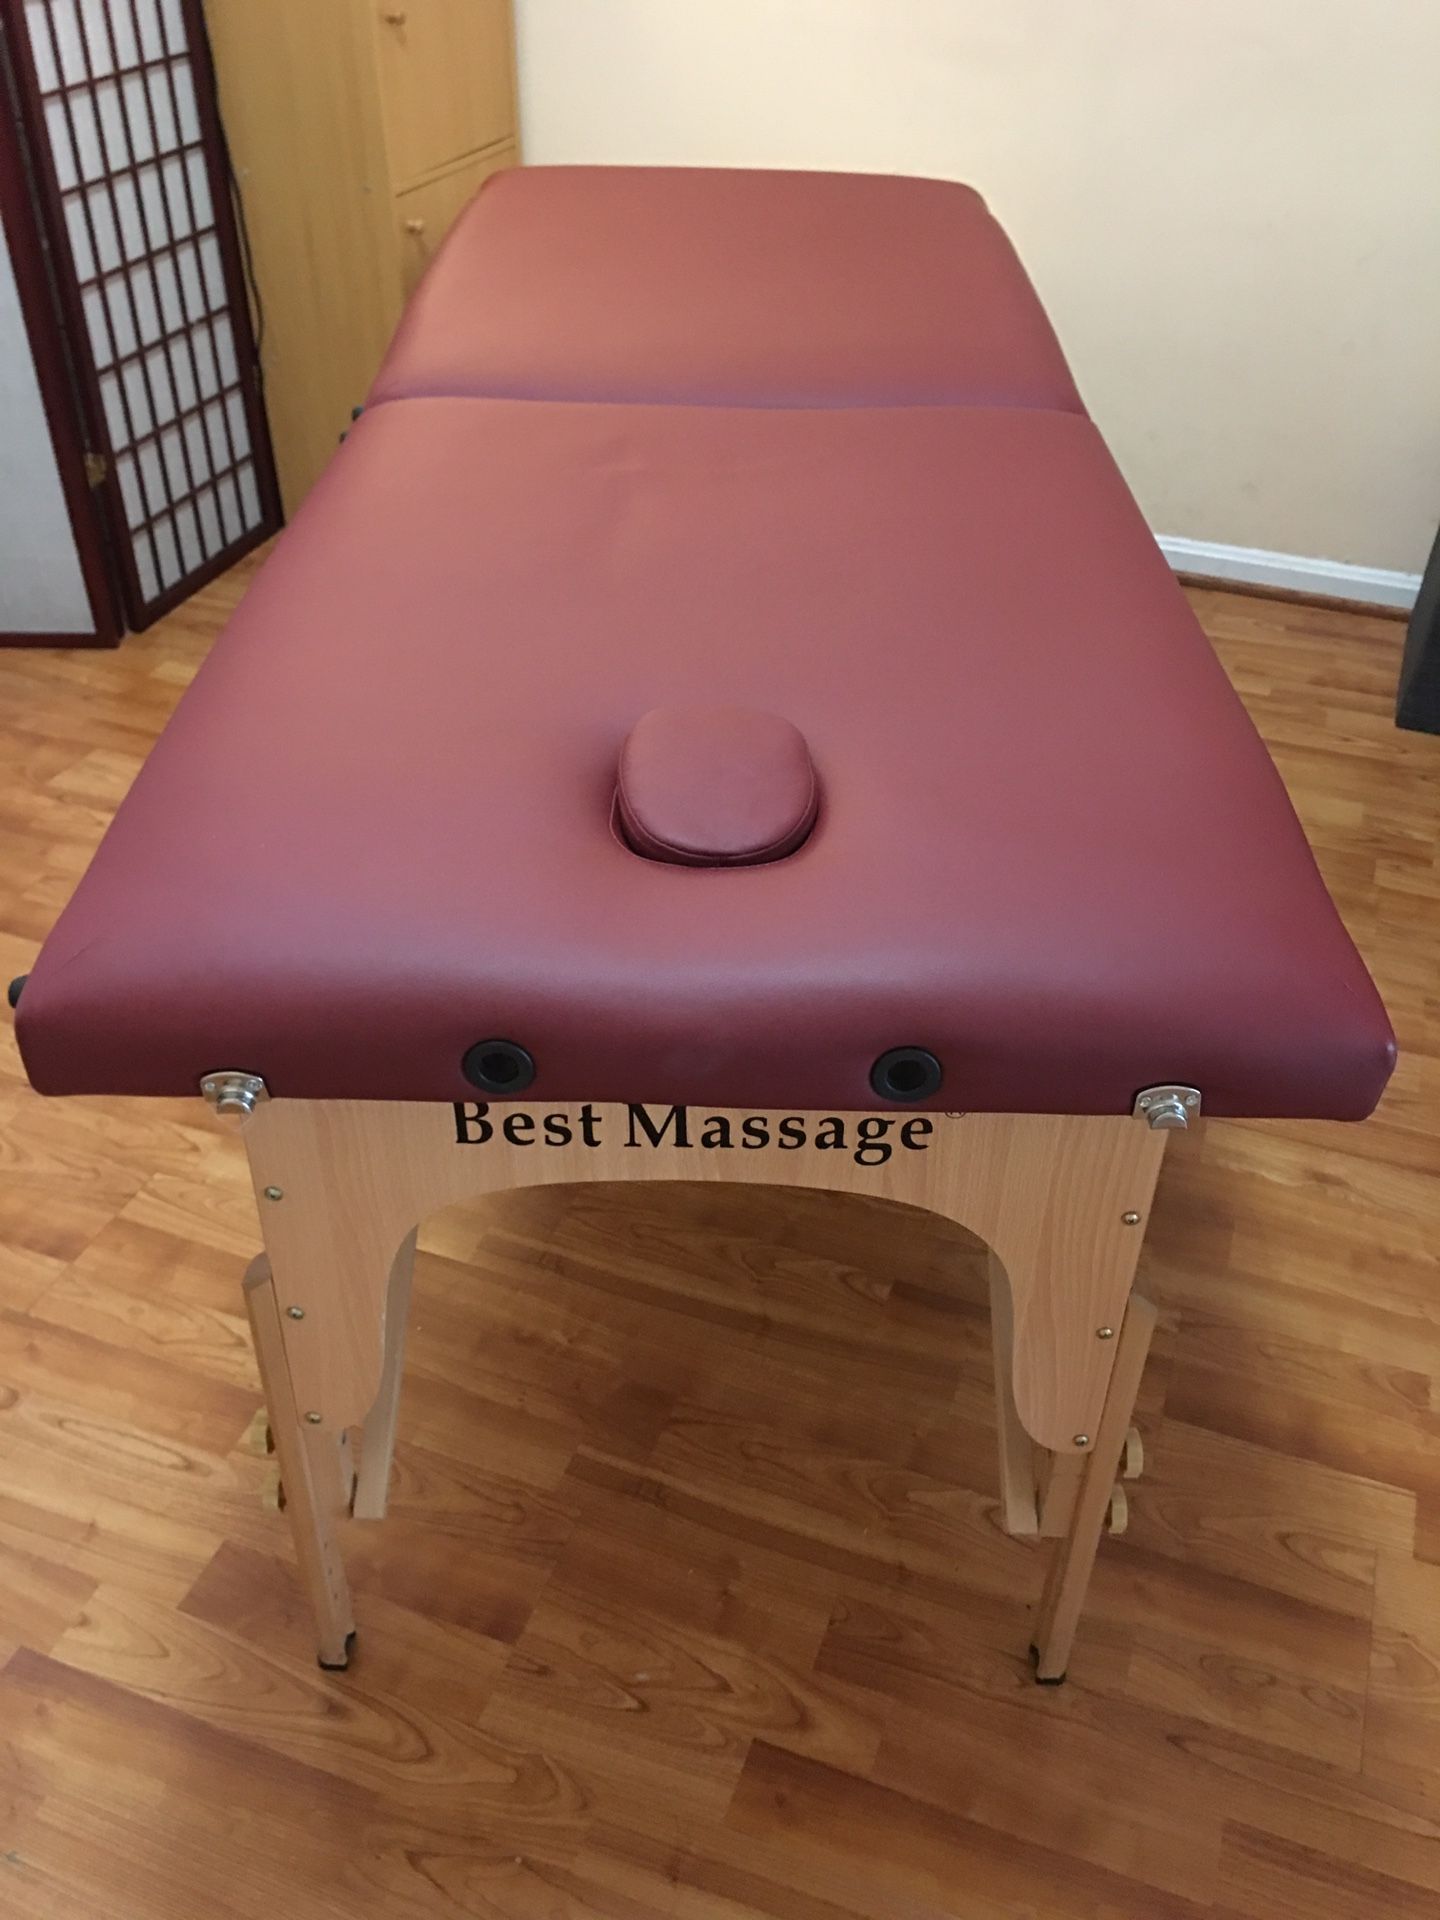 Excellent Massage table $50